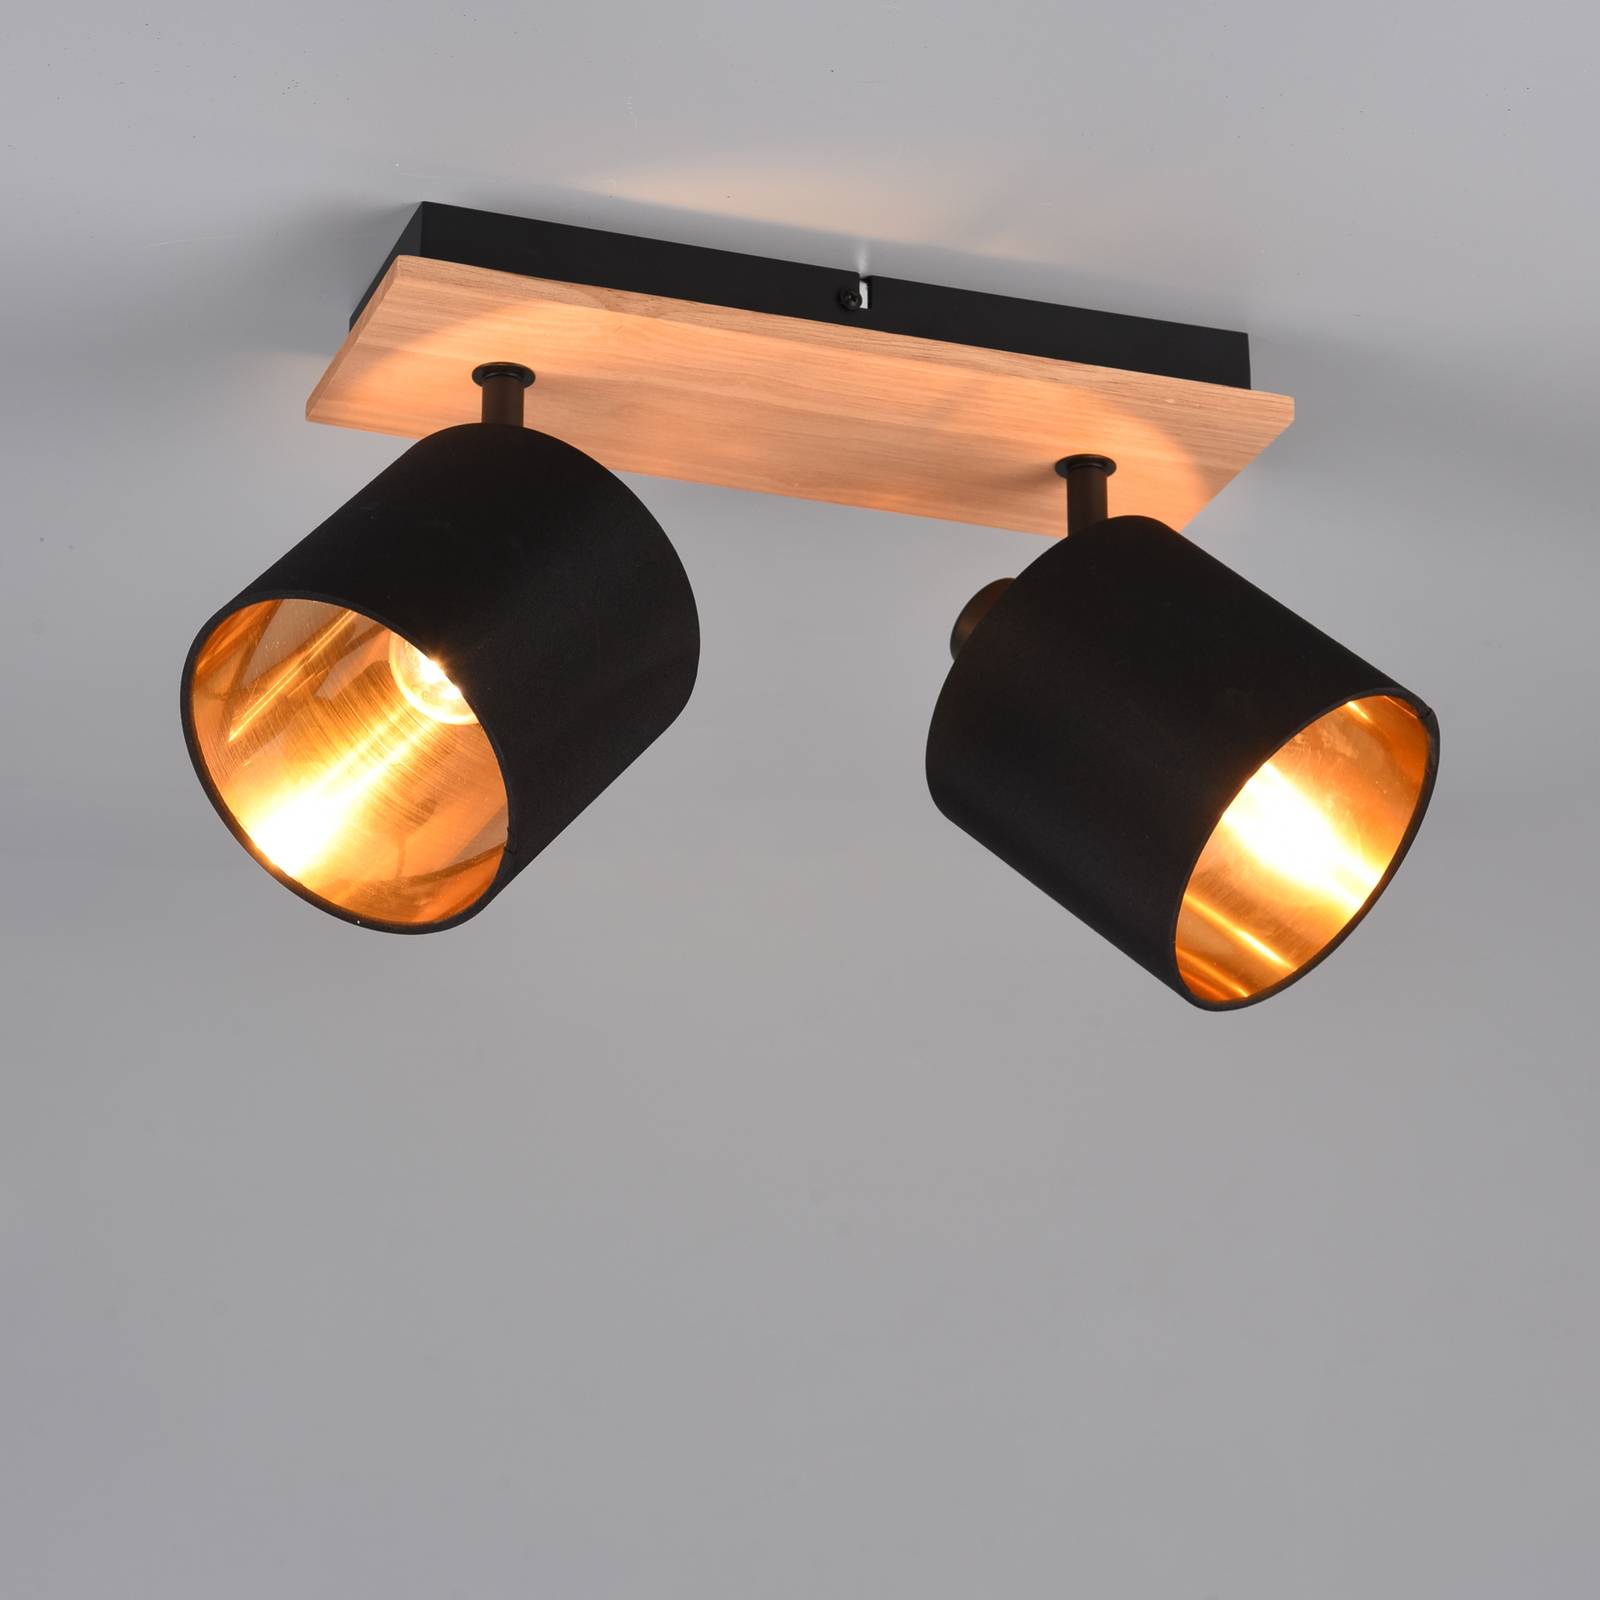 Stropný reflektor Tommy, drevo/čierna/zlatá, dĺžka 30 cm, 2 svetlá.